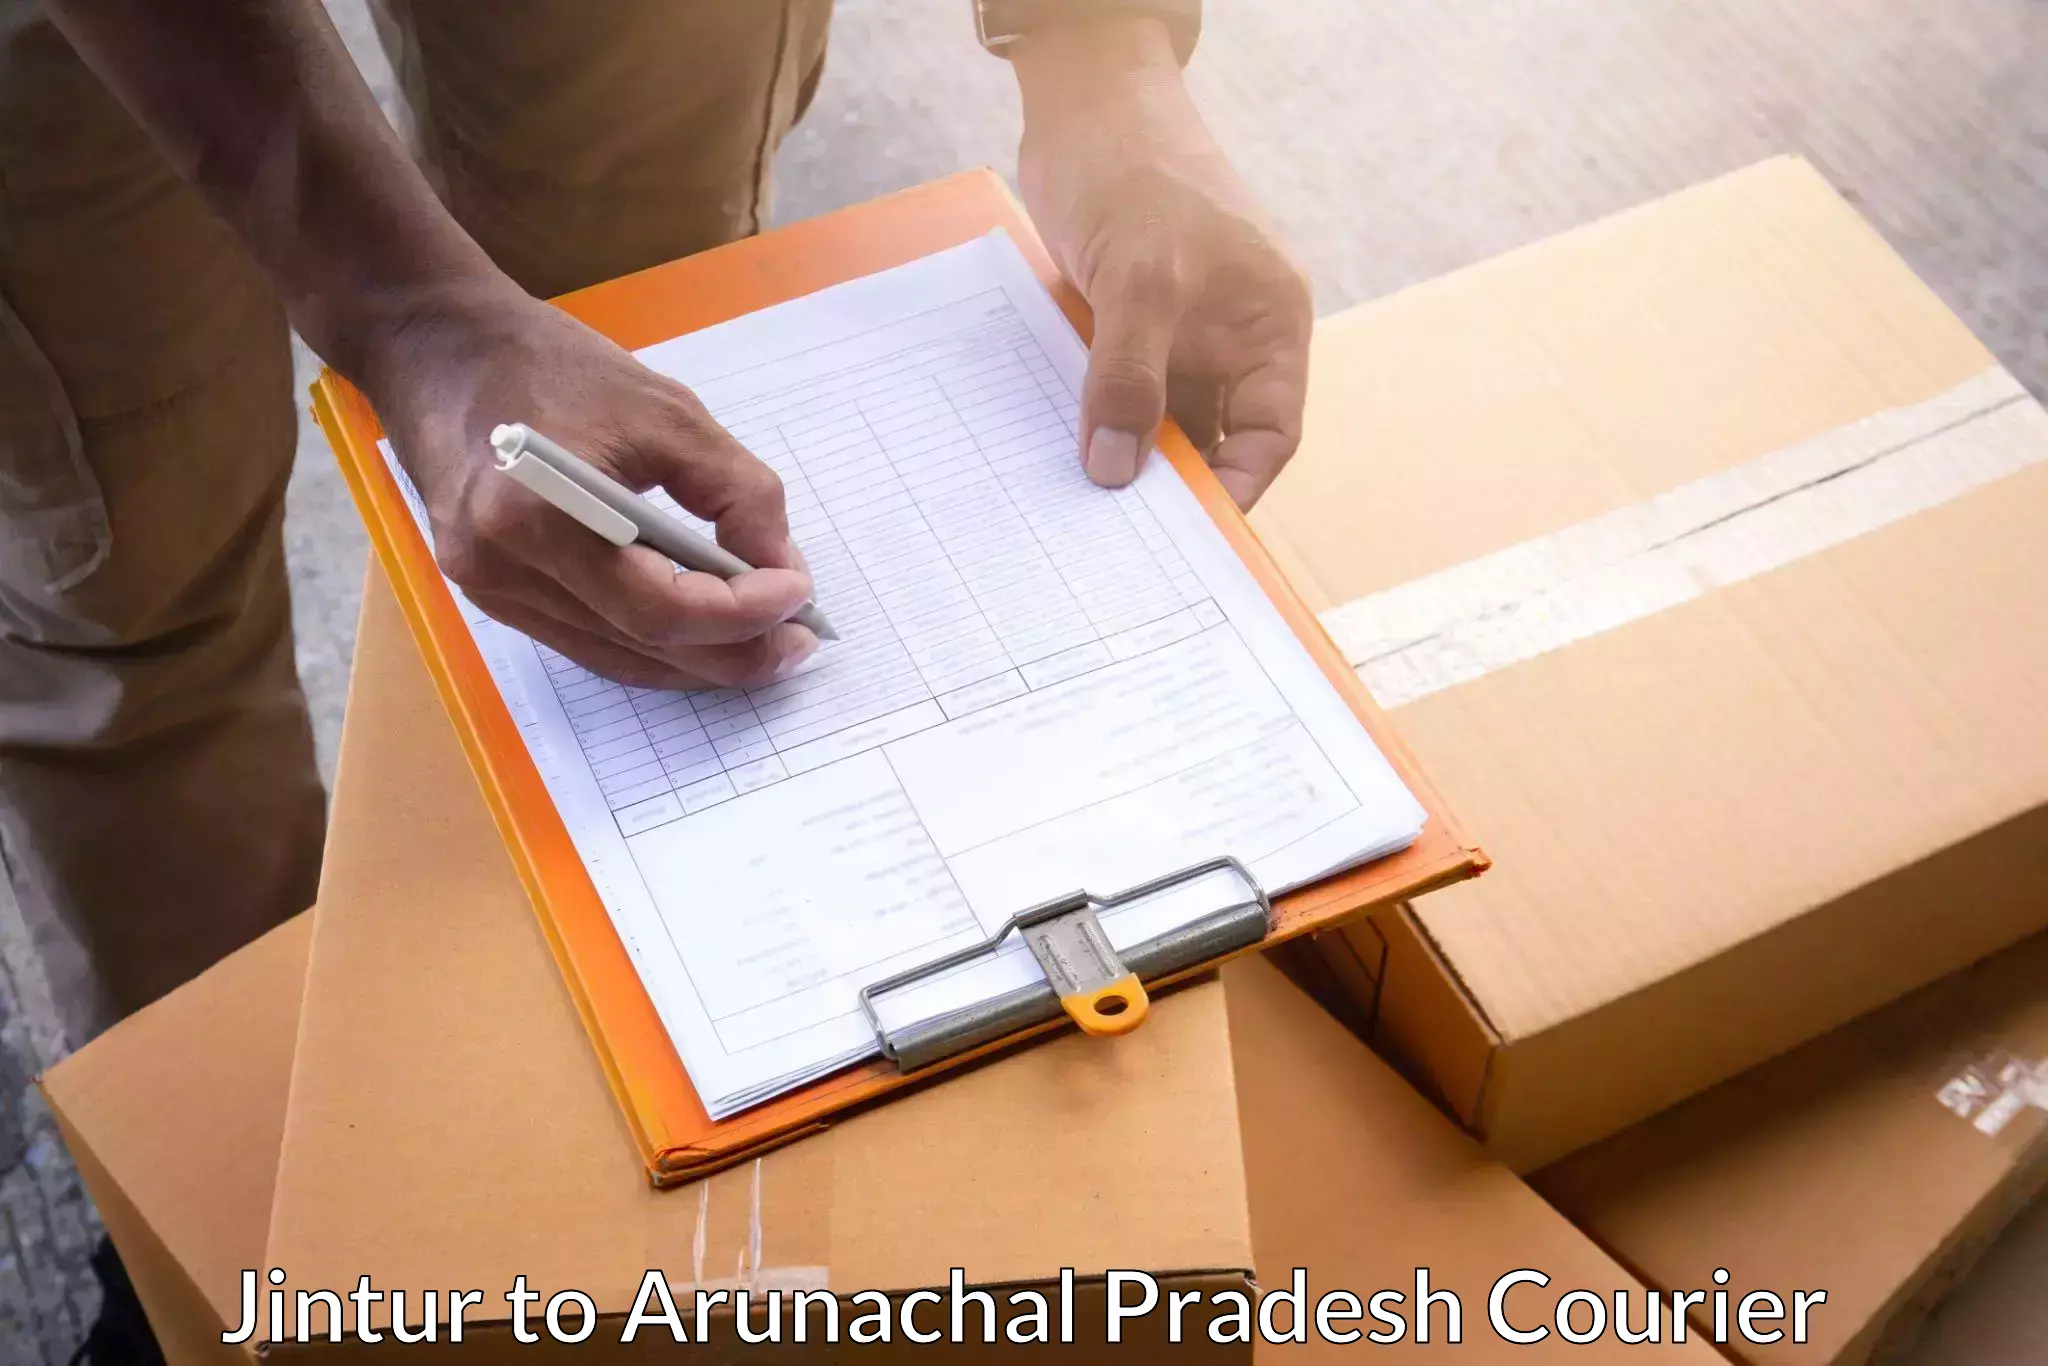 Supply chain efficiency in Jintur to Arunachal Pradesh